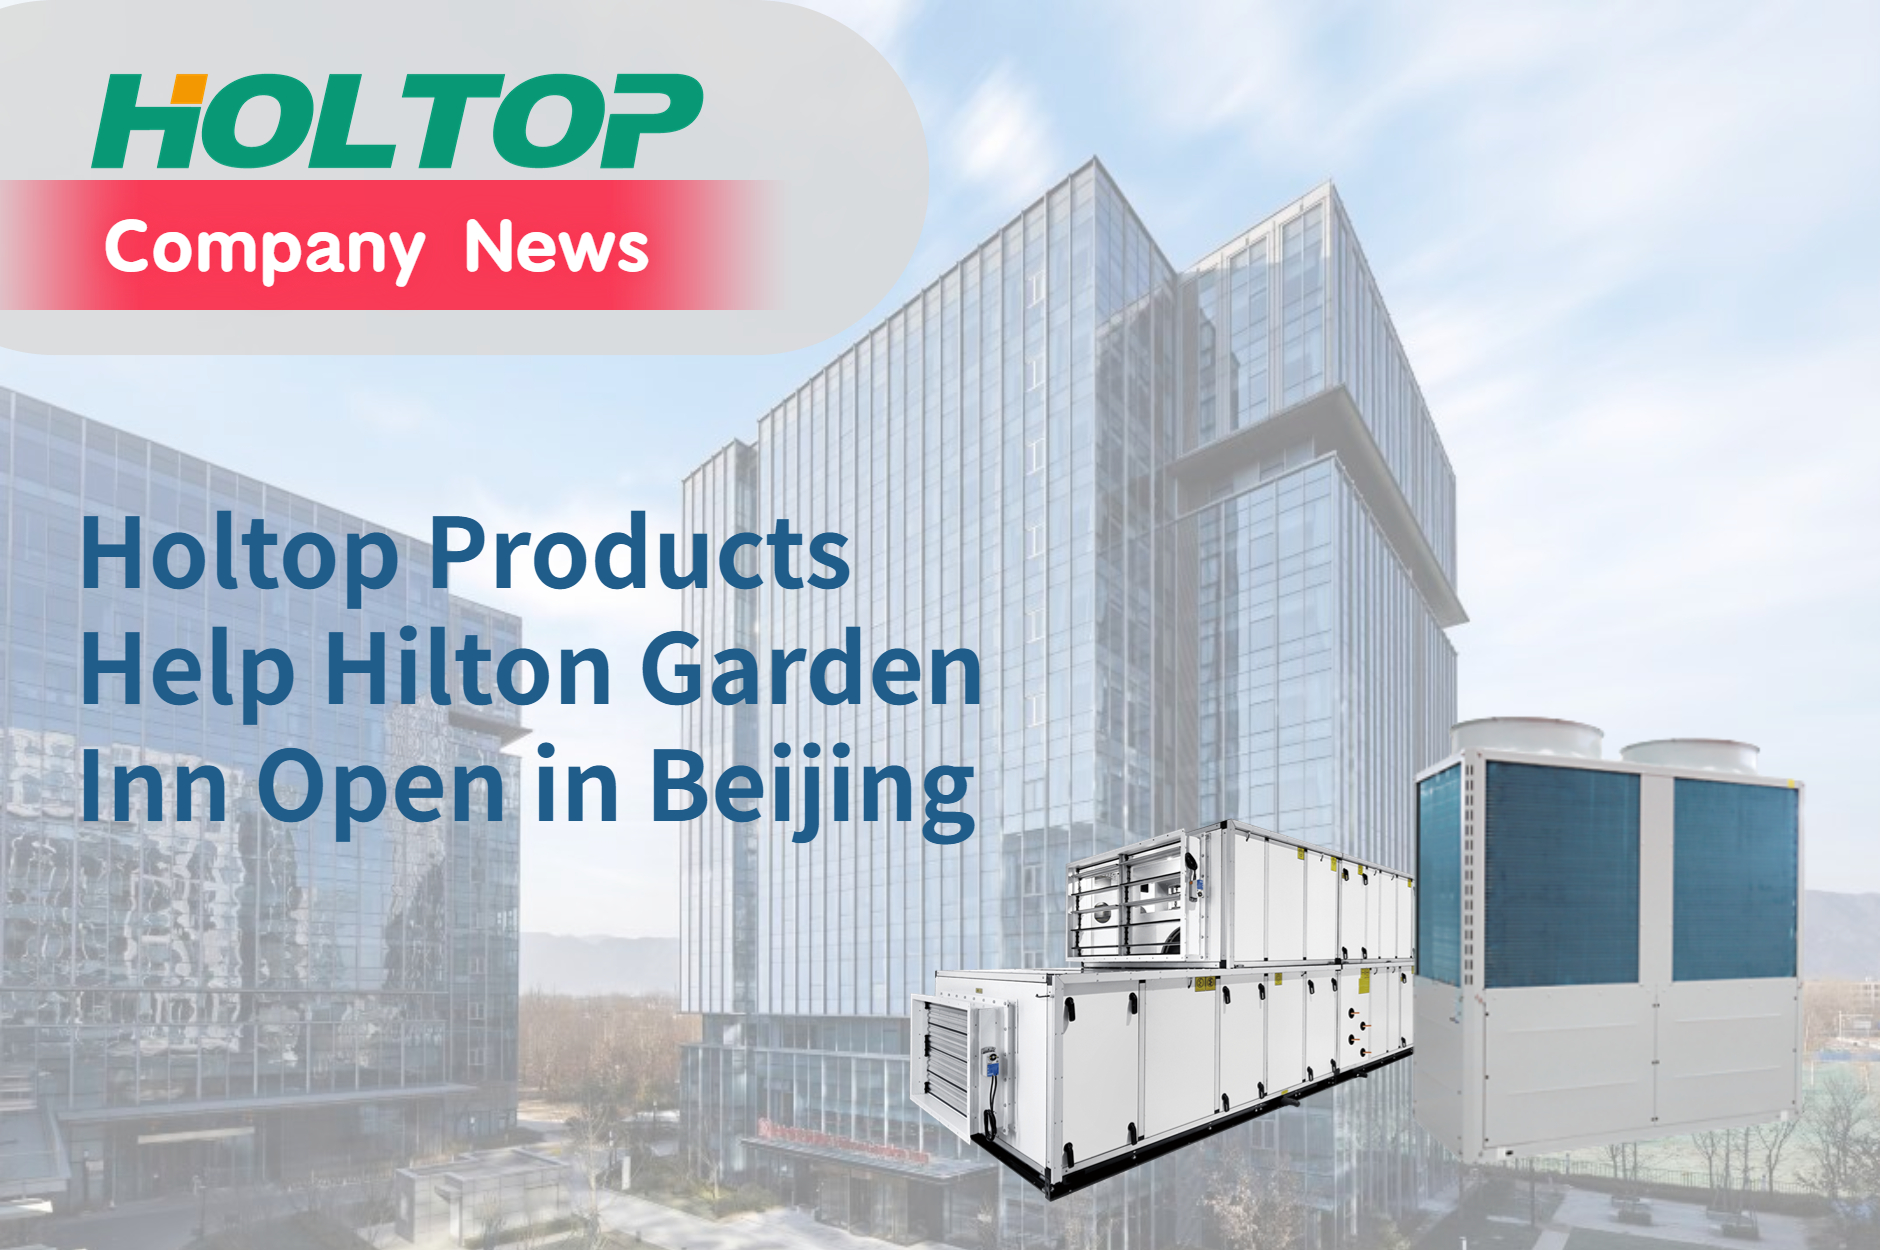 Los productos Holtop ayudan a Hilton Garden Inn a abrir en Beijing